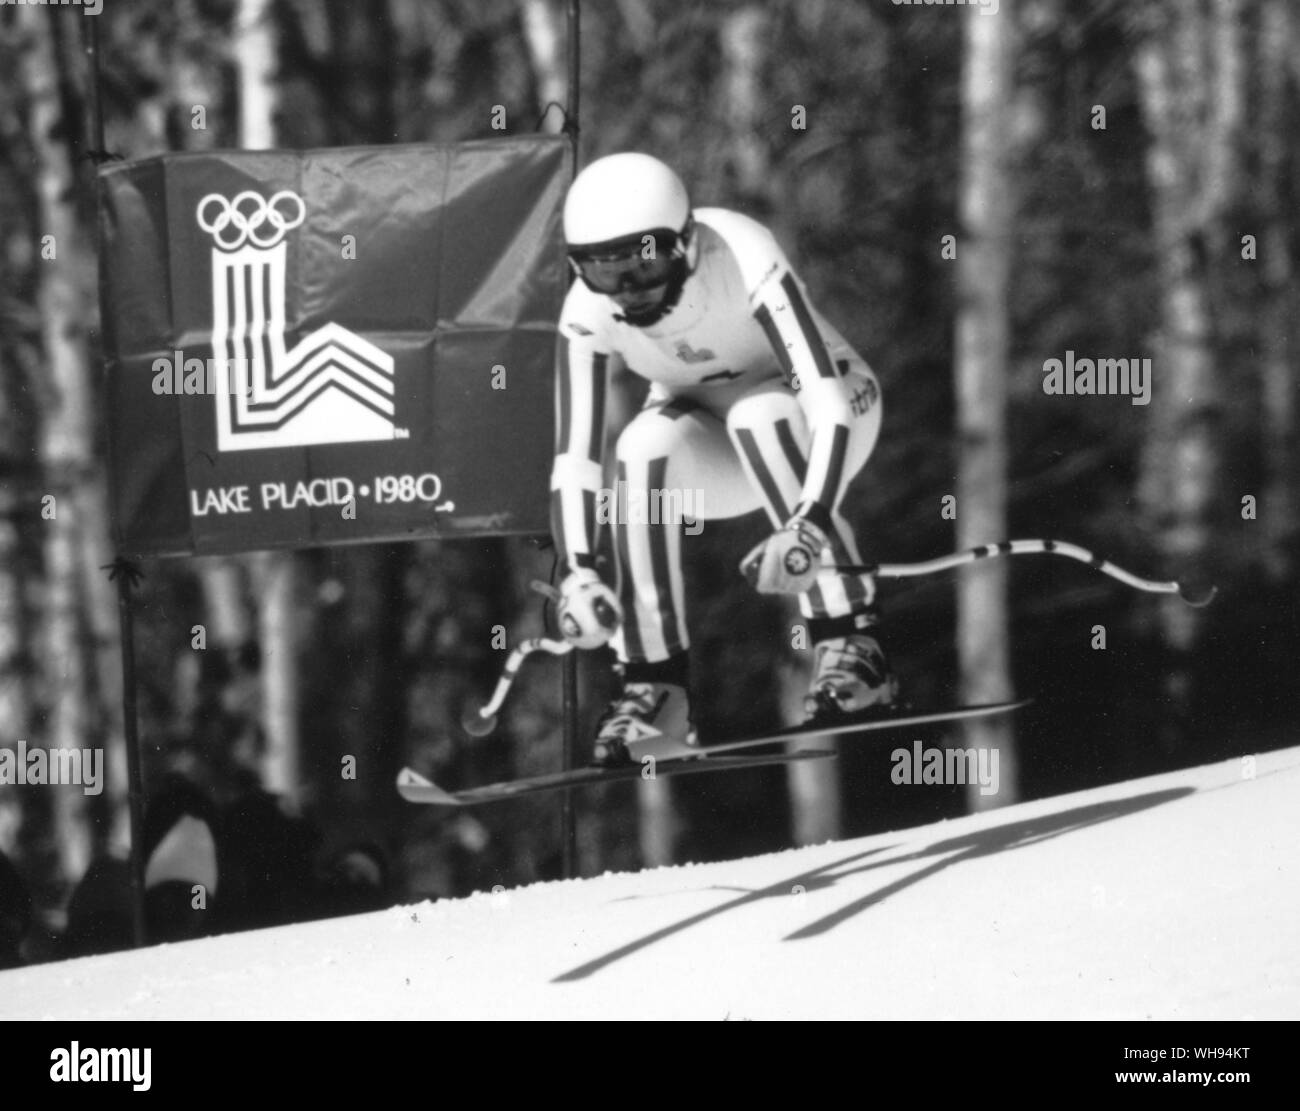 1980 Olimpiadi invernali - Lake Placid, STATI UNITI D'AMERICA. Annemarie Moser-Proll (Austria) raffigurato nella Womens Alpine Sci di discesa evento sul suo modo di vincere la medaglia d'oro. Il 17 febbraio 1980. Foto Stock